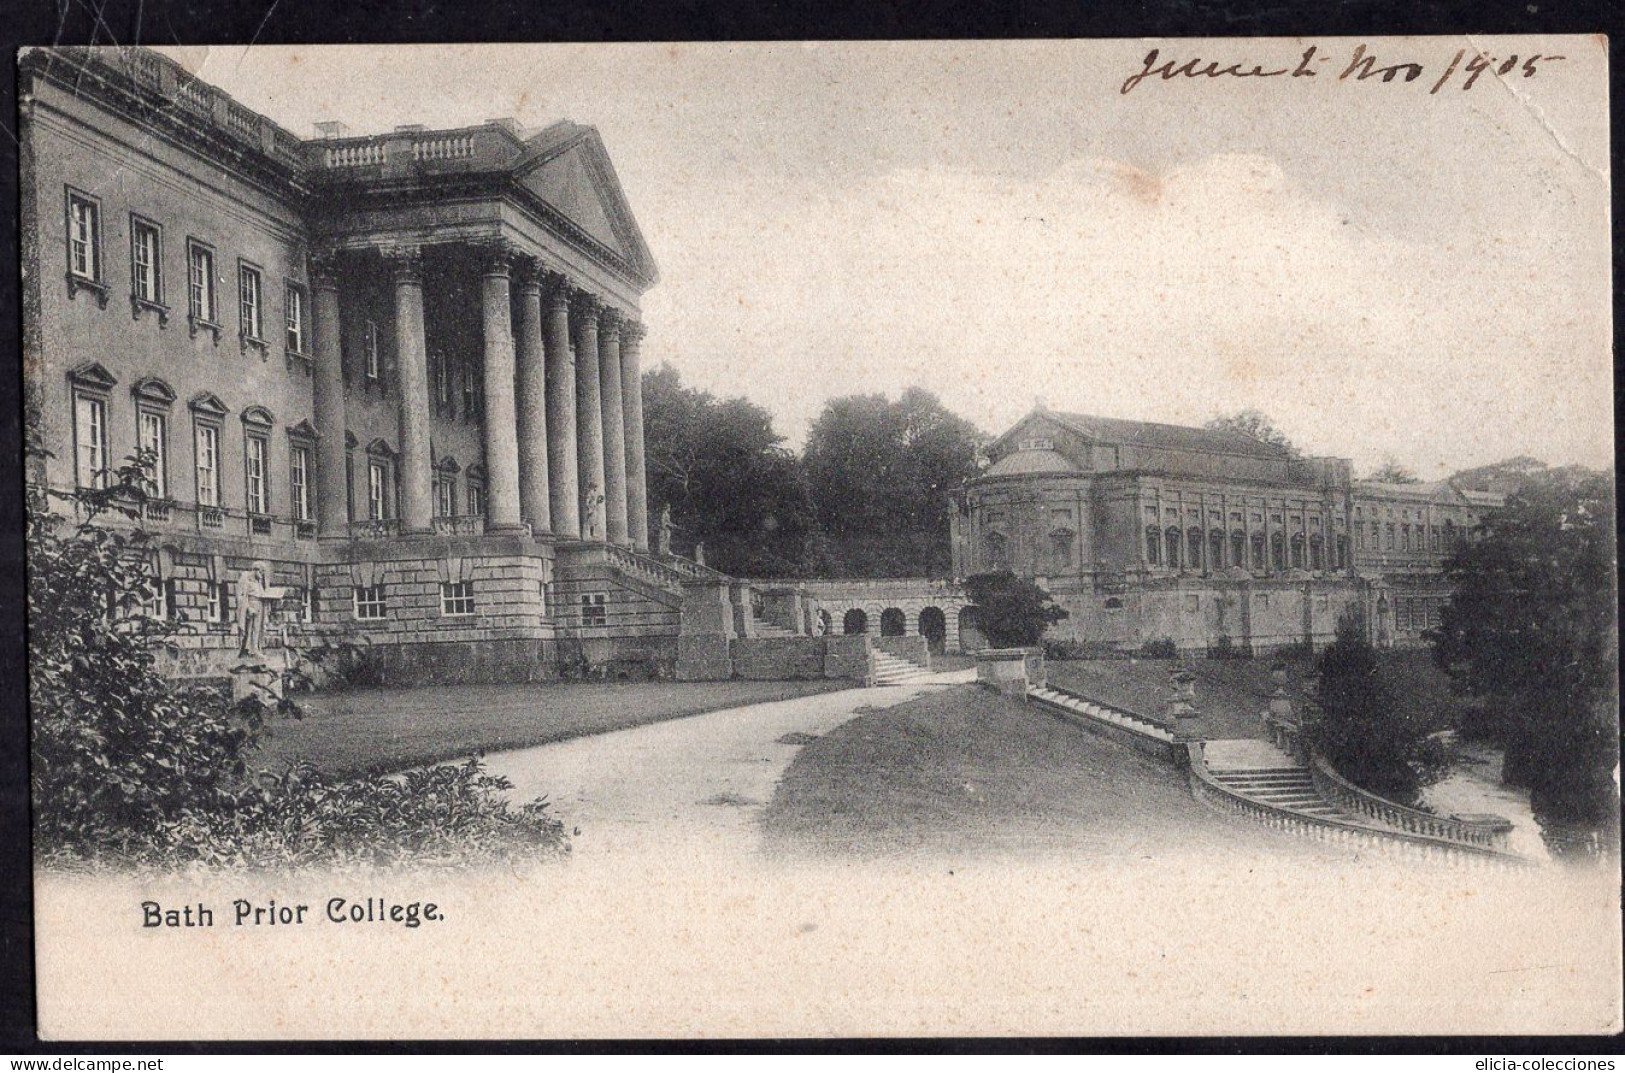 England - 1905 - Postcard - Bath Prior College - Bath